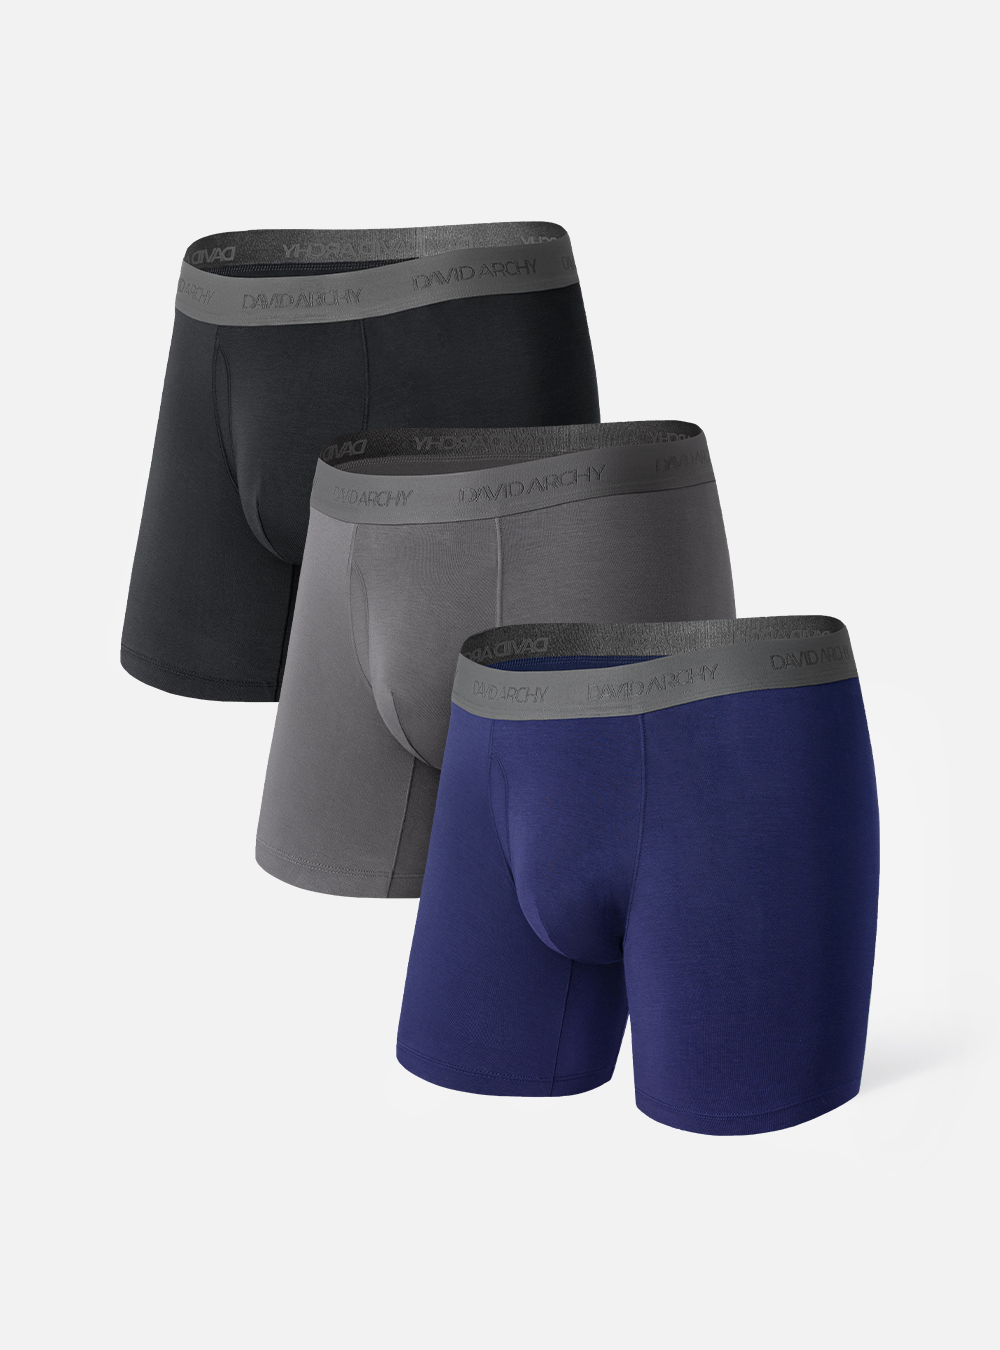 Buy DAVID ARCHY Men's Underwear Premium Cotton Boxer Briefs Dual Pouch  Underwear with Fly Meundies 3 or 4 Pack Online at desertcartKUWAIT